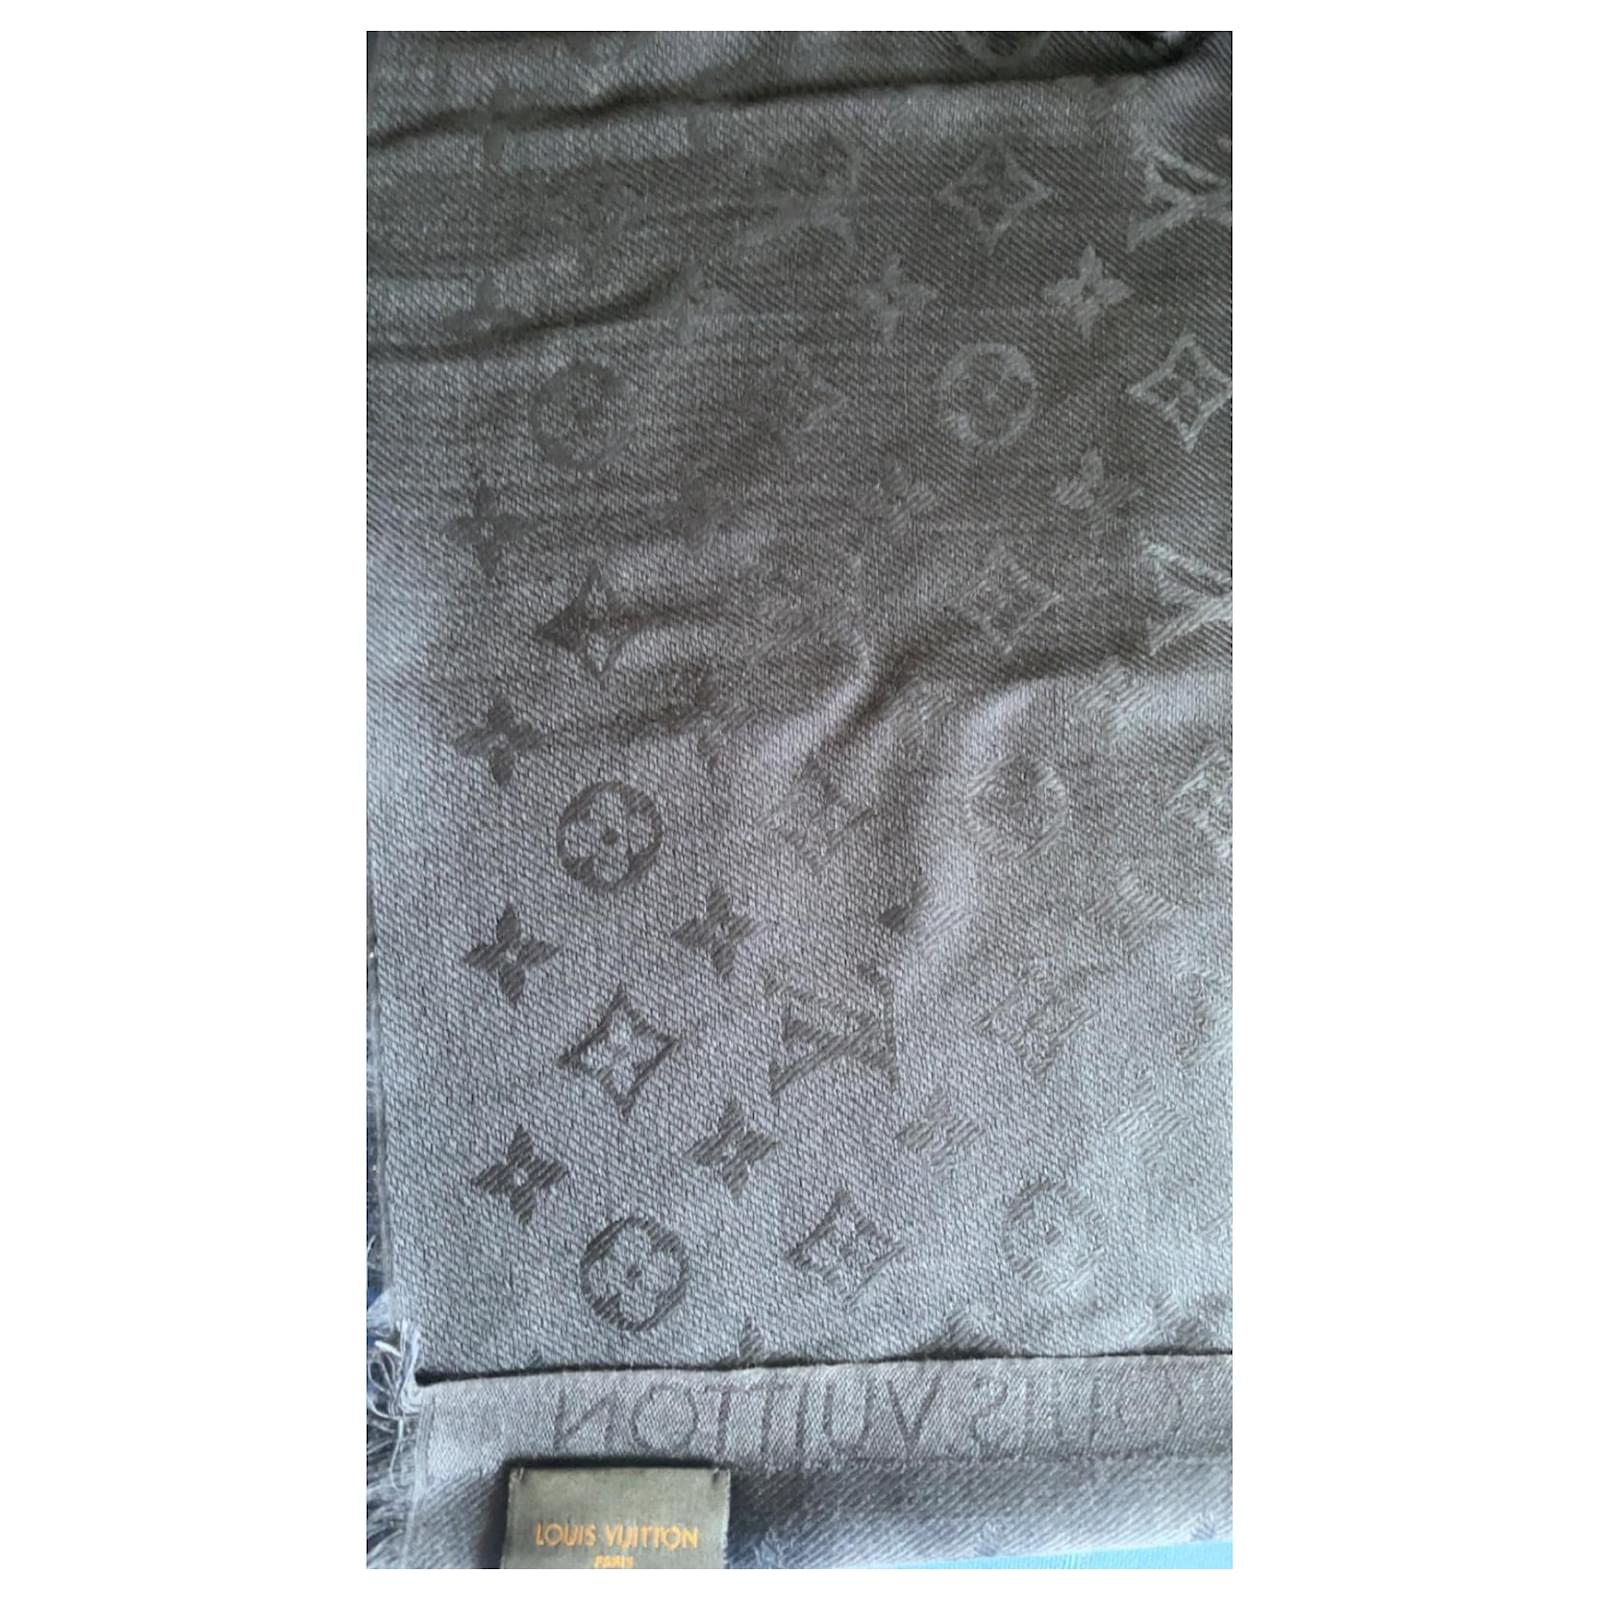 Shop Louis Vuitton MONOGRAM Monogram confidential square (M70638